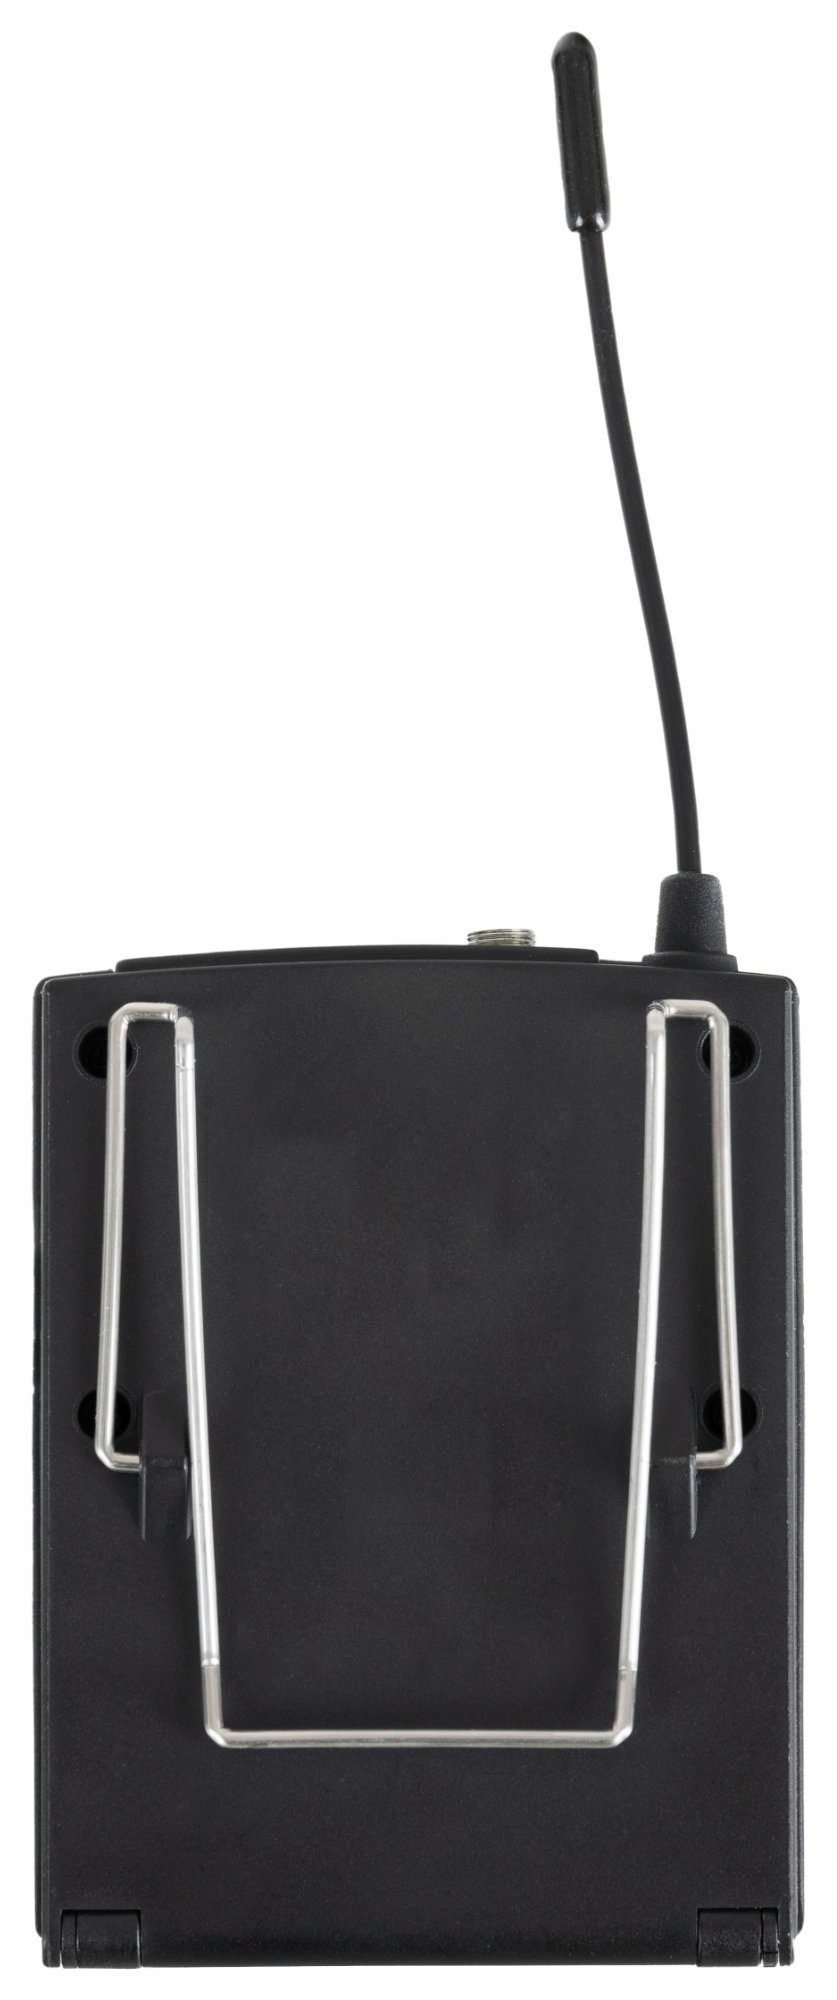 Beatfoxx Silent Guide V2 SDR-BP30 Kanäle, empfangbare handelsüblichen Kopfhörer) jedem UHF-Technik, Verwendung mit 3 Bodypack-Receiver mit Funk-Empfänger Funk-Kopfhörer (Stereo zur